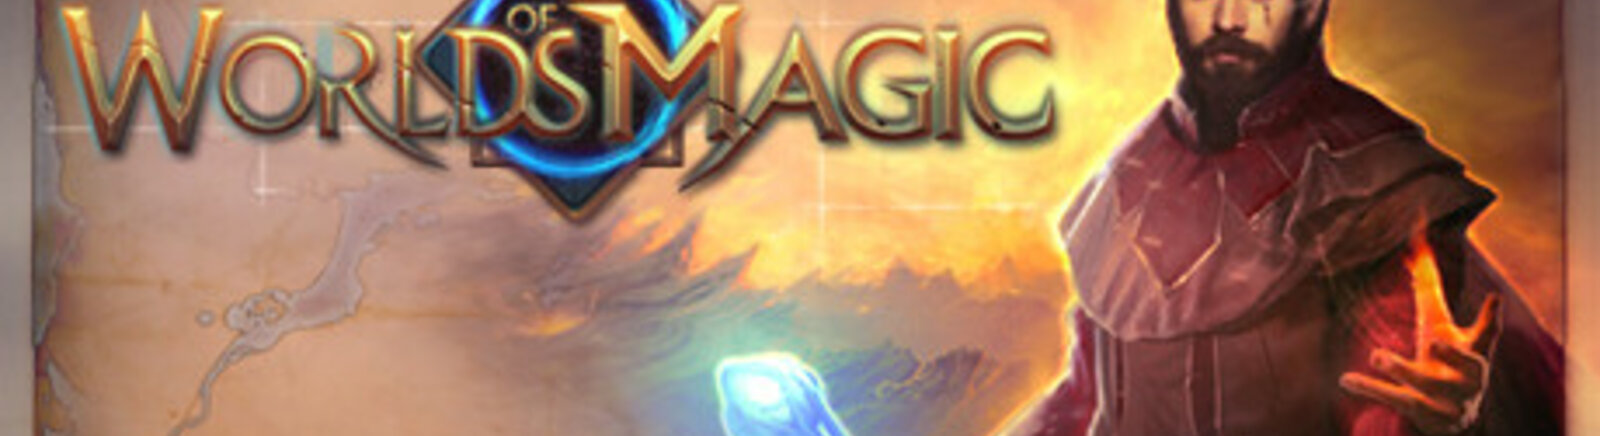 Дата выхода Worlds of Magic  на PC, Mac и Linux в России и во всем мире